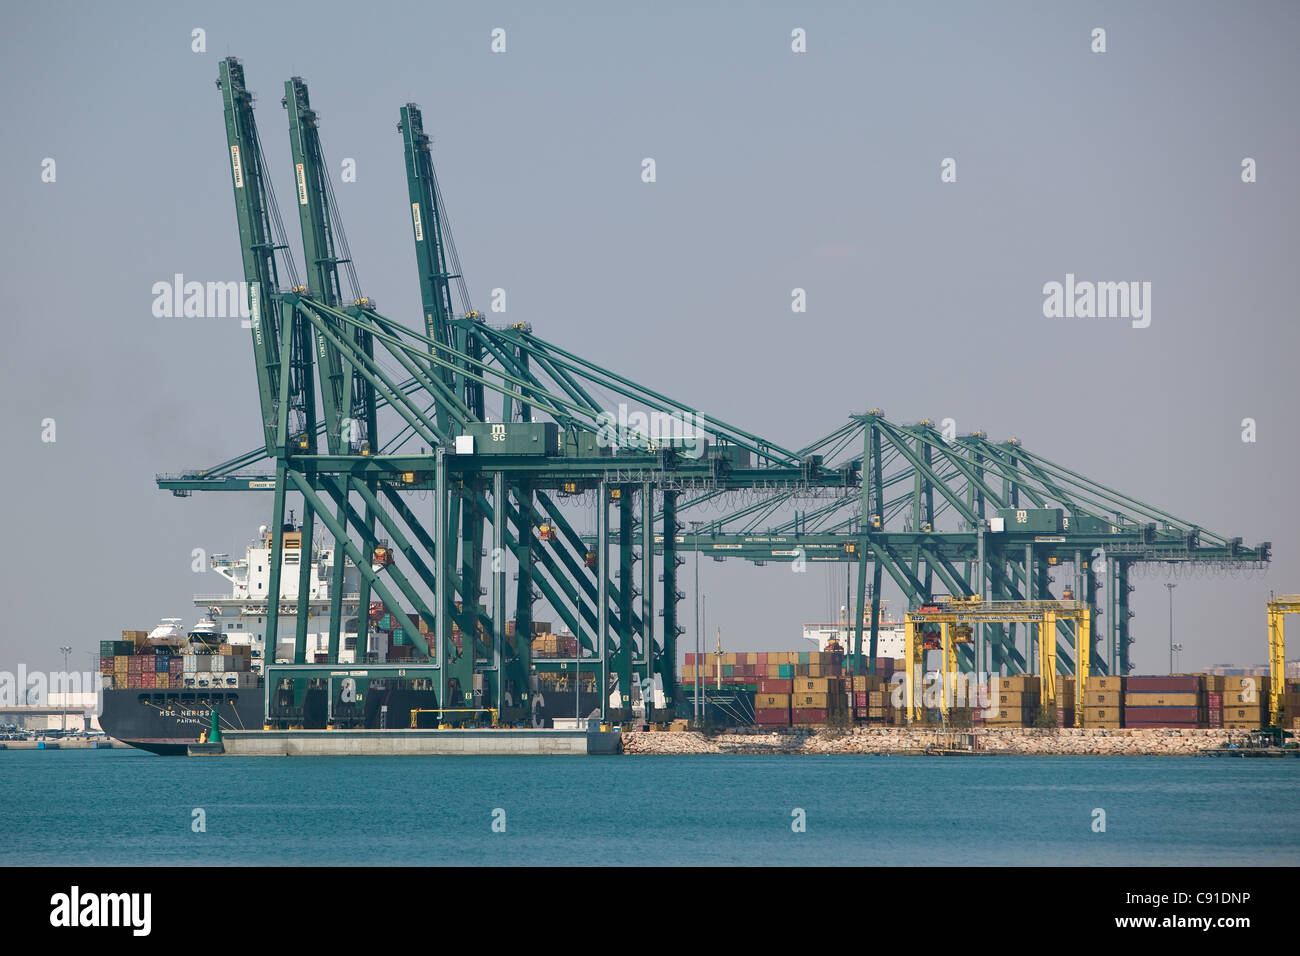 Porte-conteneurs 'MSC' NERISSA loading port de Valence Espagne Banque D'Images